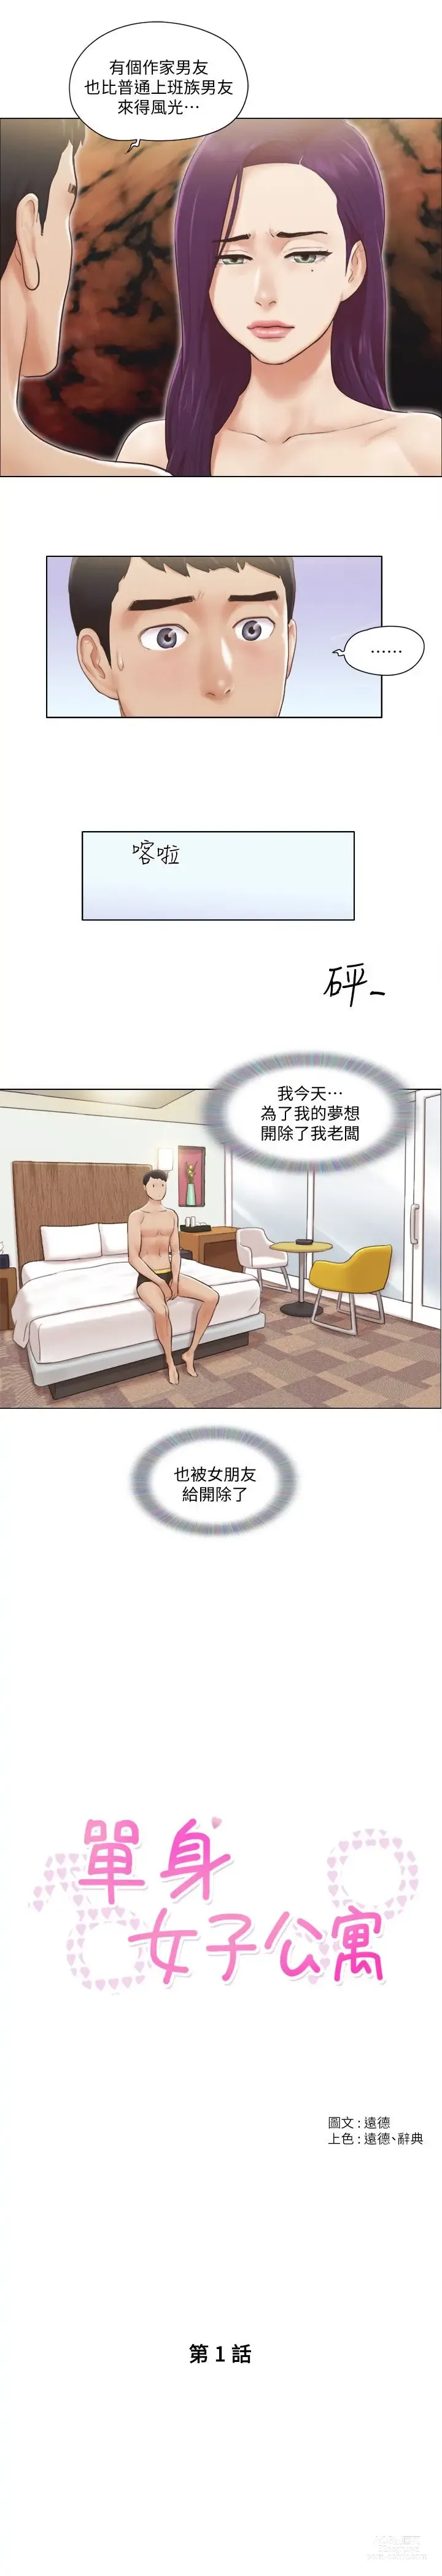 Page 11 of manga 單身女子公寓 1-41 END